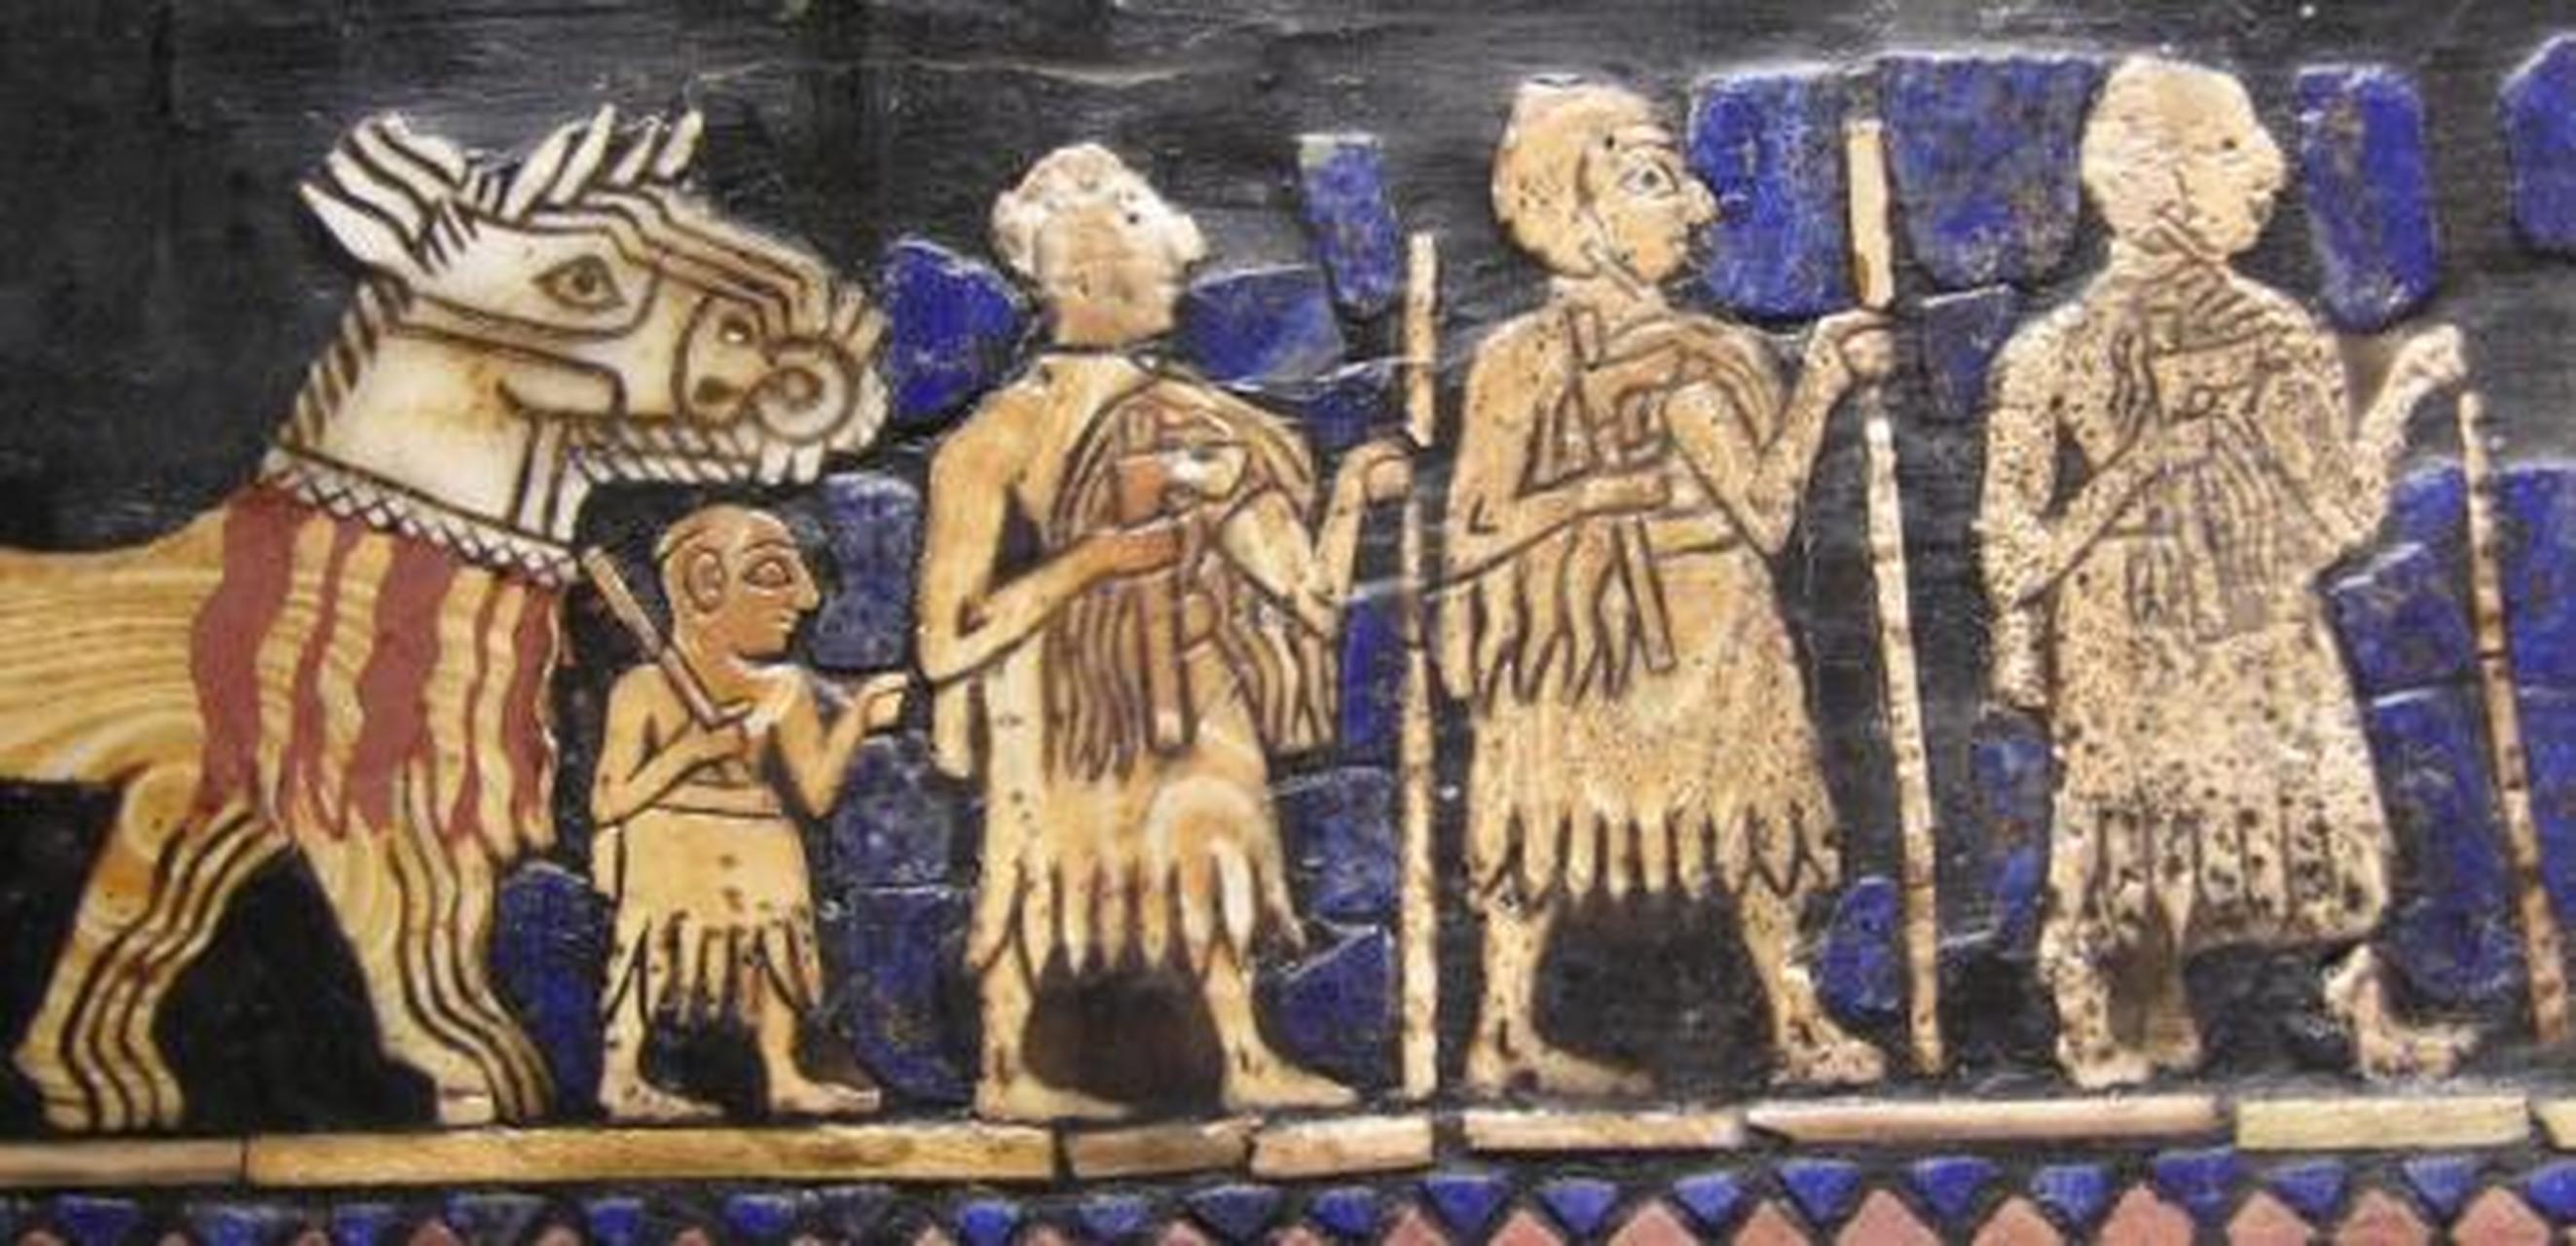 苏美尔人和古巴比伦是两个古代文明,它们之间的关系是复杂而且历史